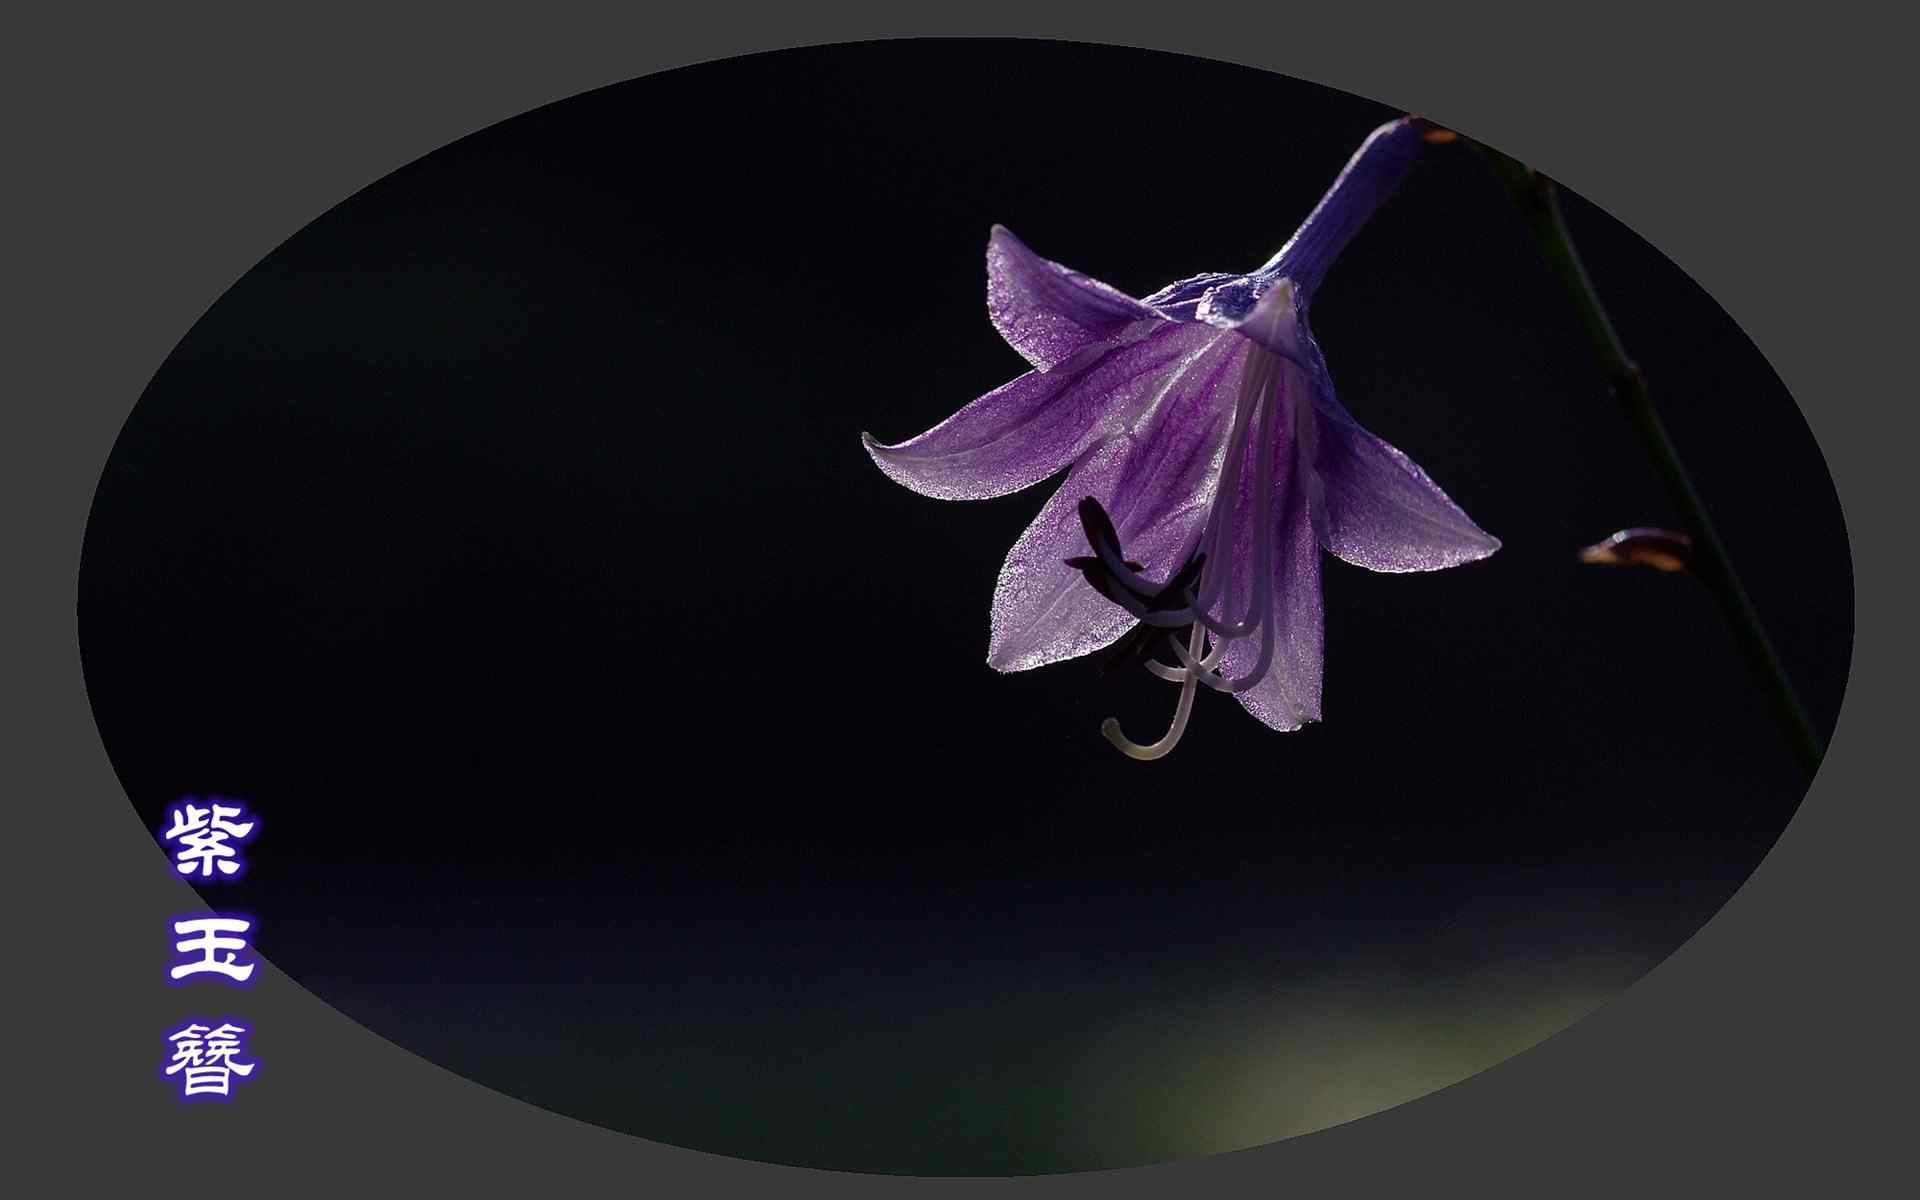 唯美的紫玉簪植物摄影图片桌面壁纸